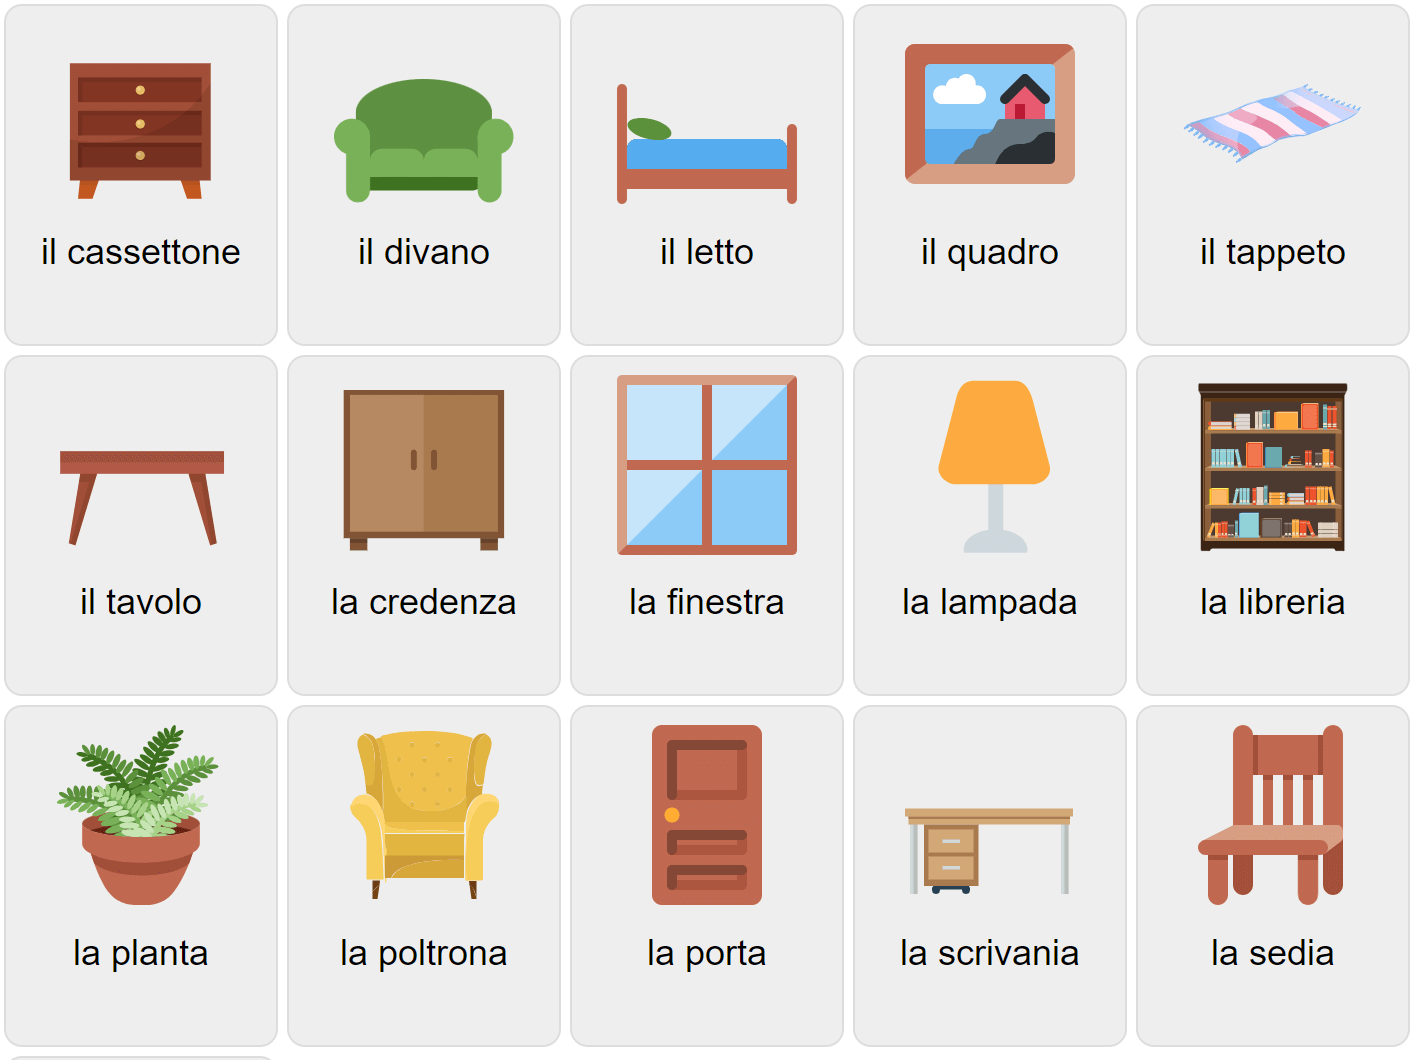 Мебель  итальянском языке